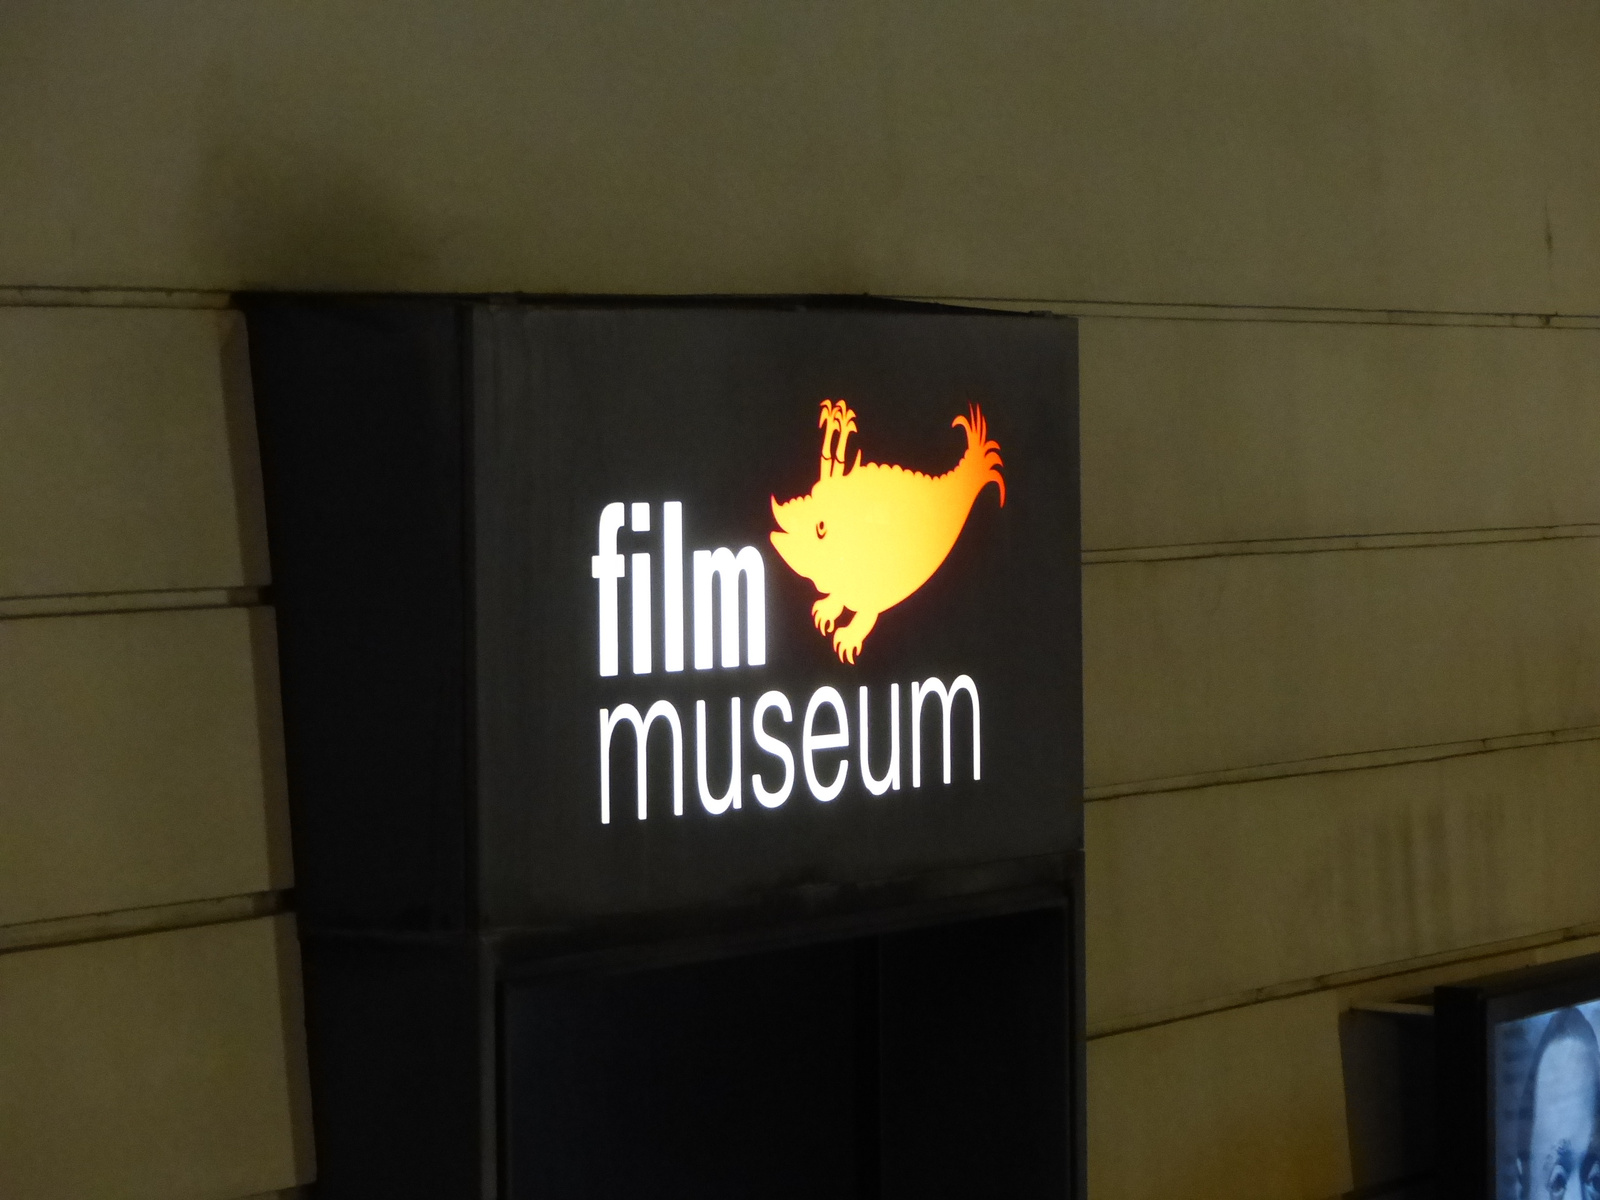 Bécs (Wien) film museum, SzG3